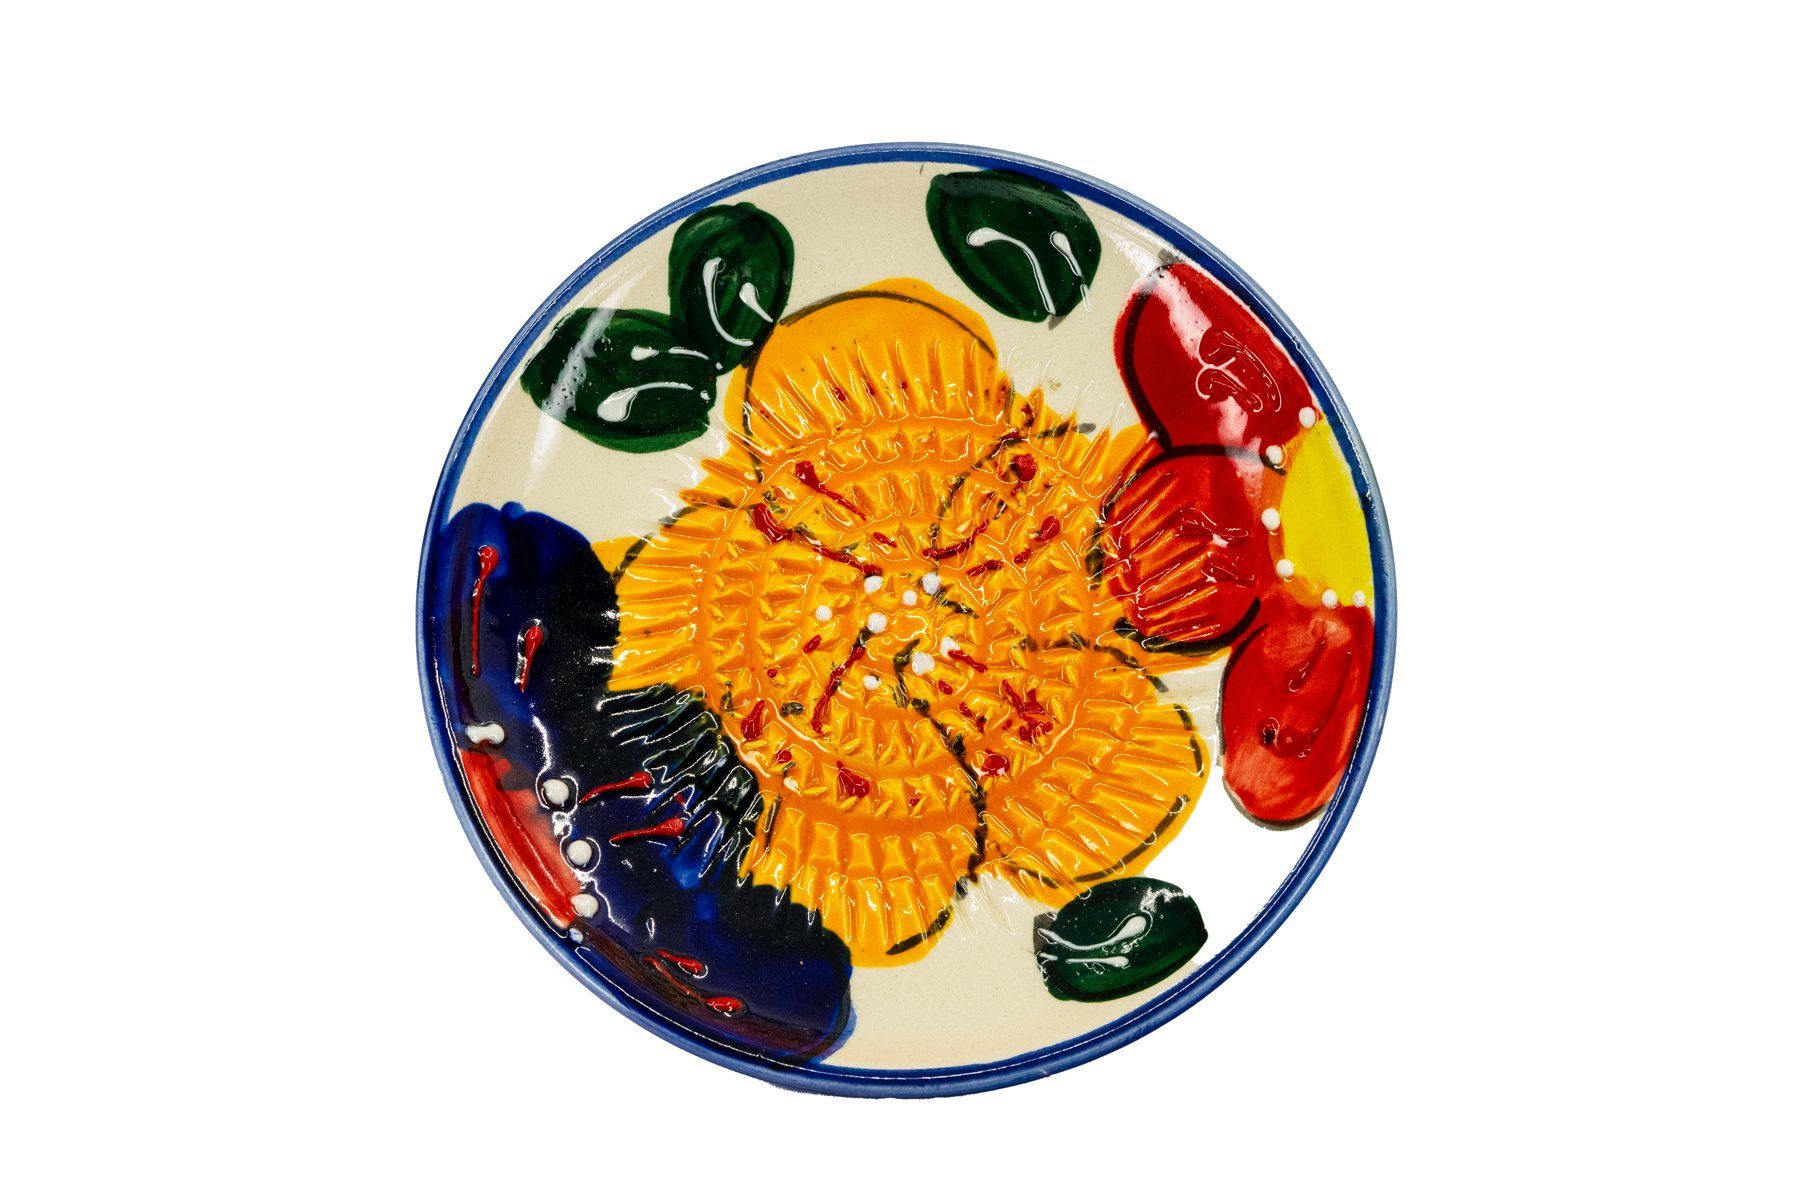 Kaladia Multireibe 12cm Reibeteller Küchenreibe handbemalte Keramik, mit Spain Made in bunten - Blumen